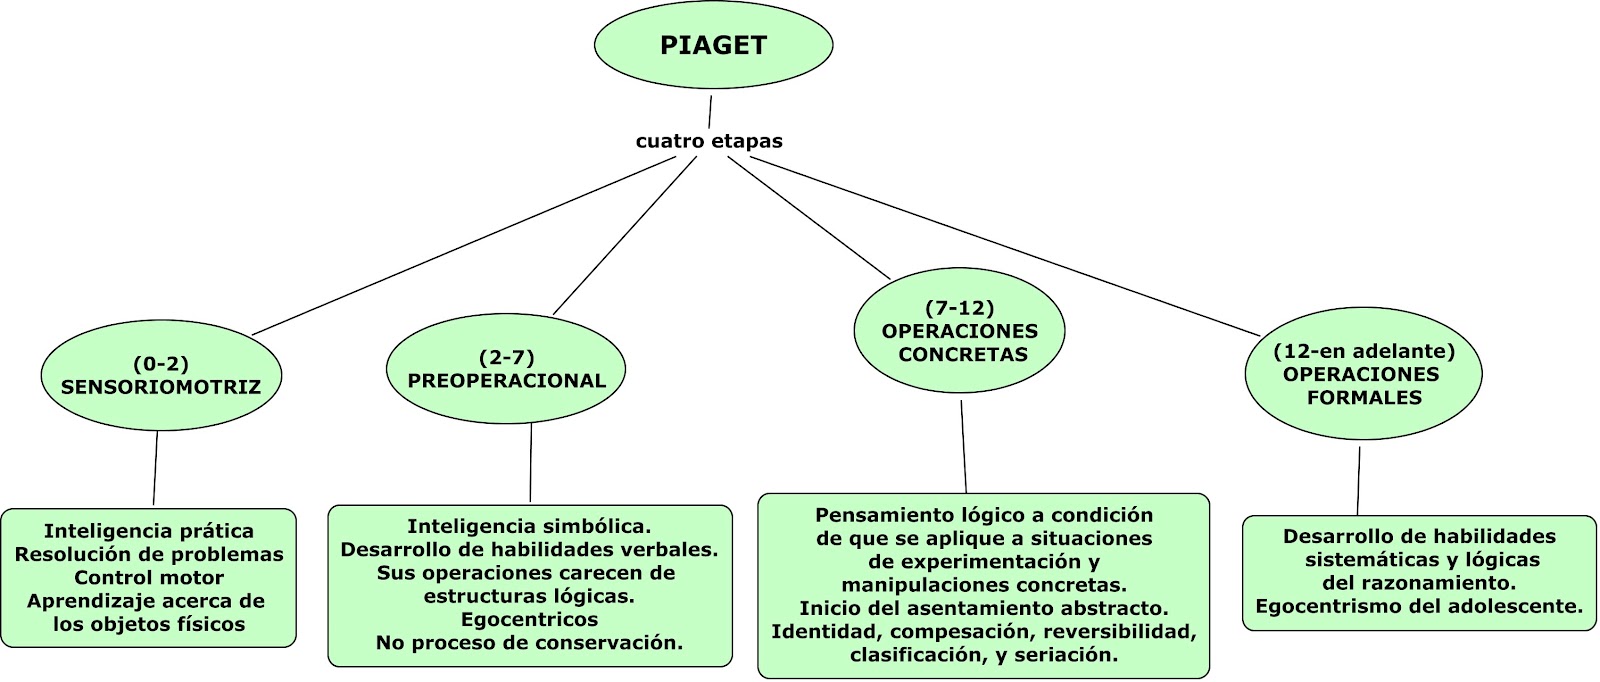 Piaget Explica A Piaget 1450